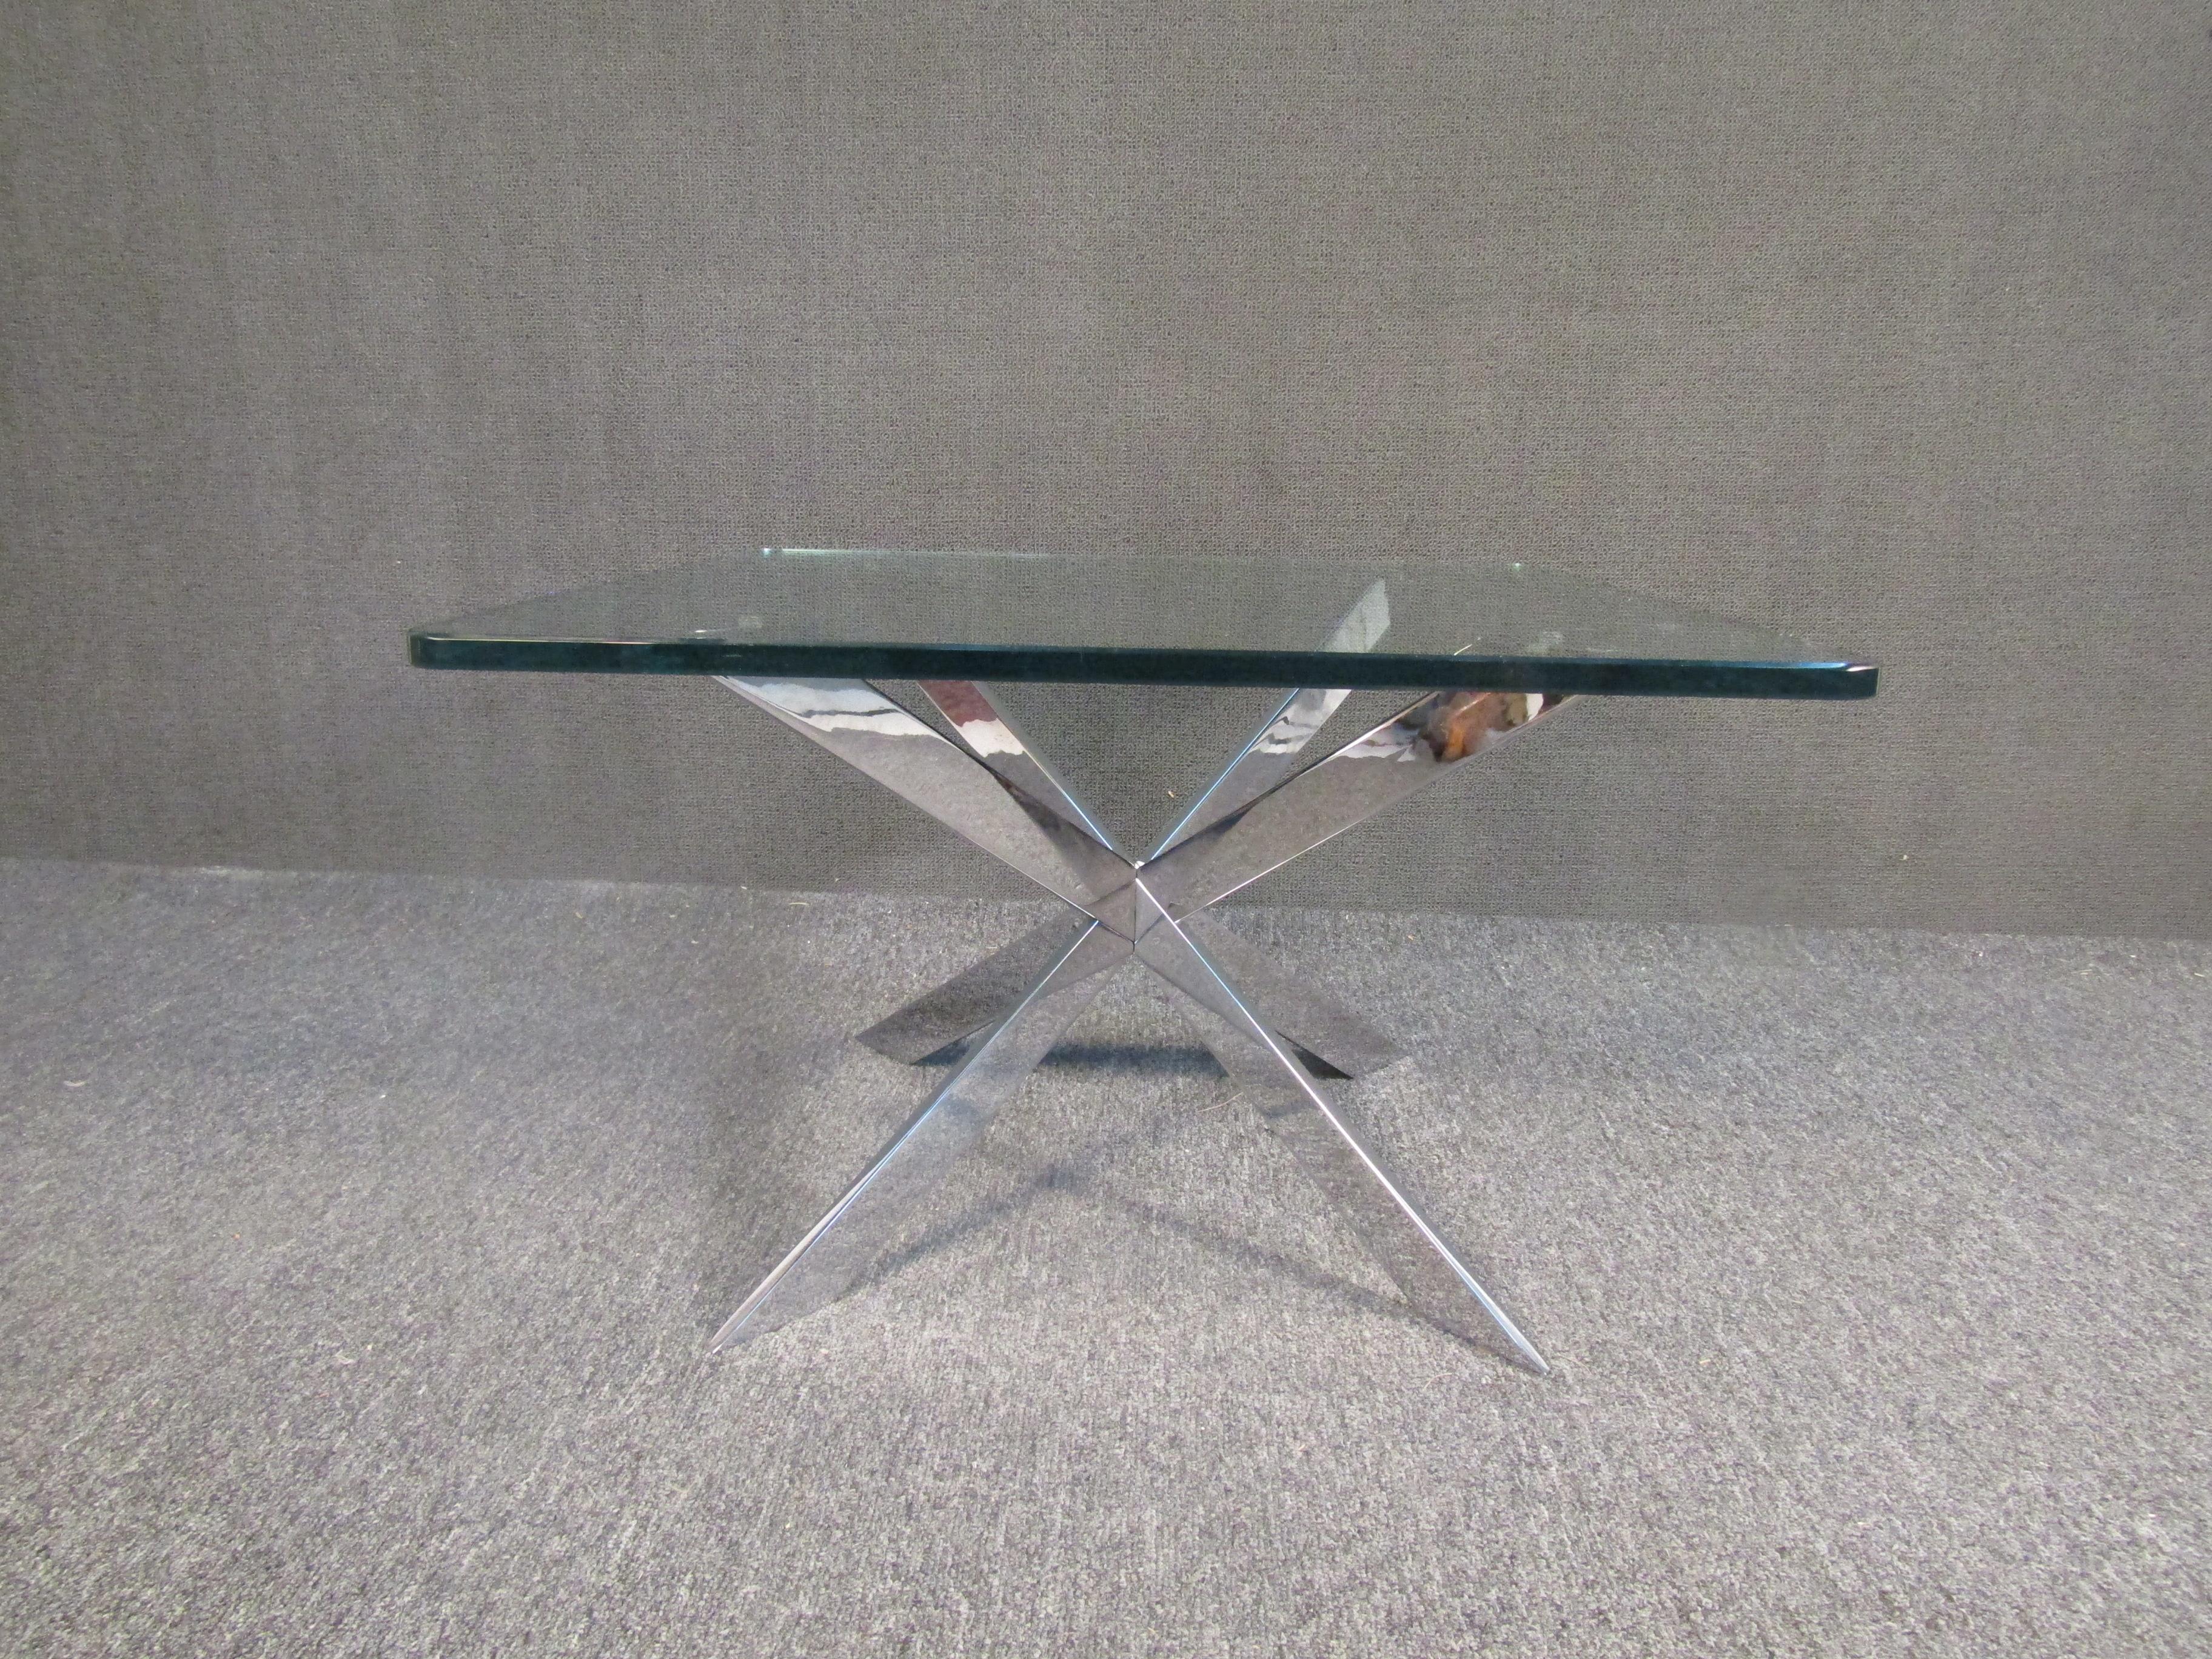 Moderner Beistelltisch im Vintage-Stil mit interessantem, geometrischem Chromgestell und dicker Glasplatte. Dieser Tisch ist ein echter Blickfang und lässt sich leicht mit einer farbenfrohen Umgebung kombinieren. Bitte bestätigen Sie den Standort